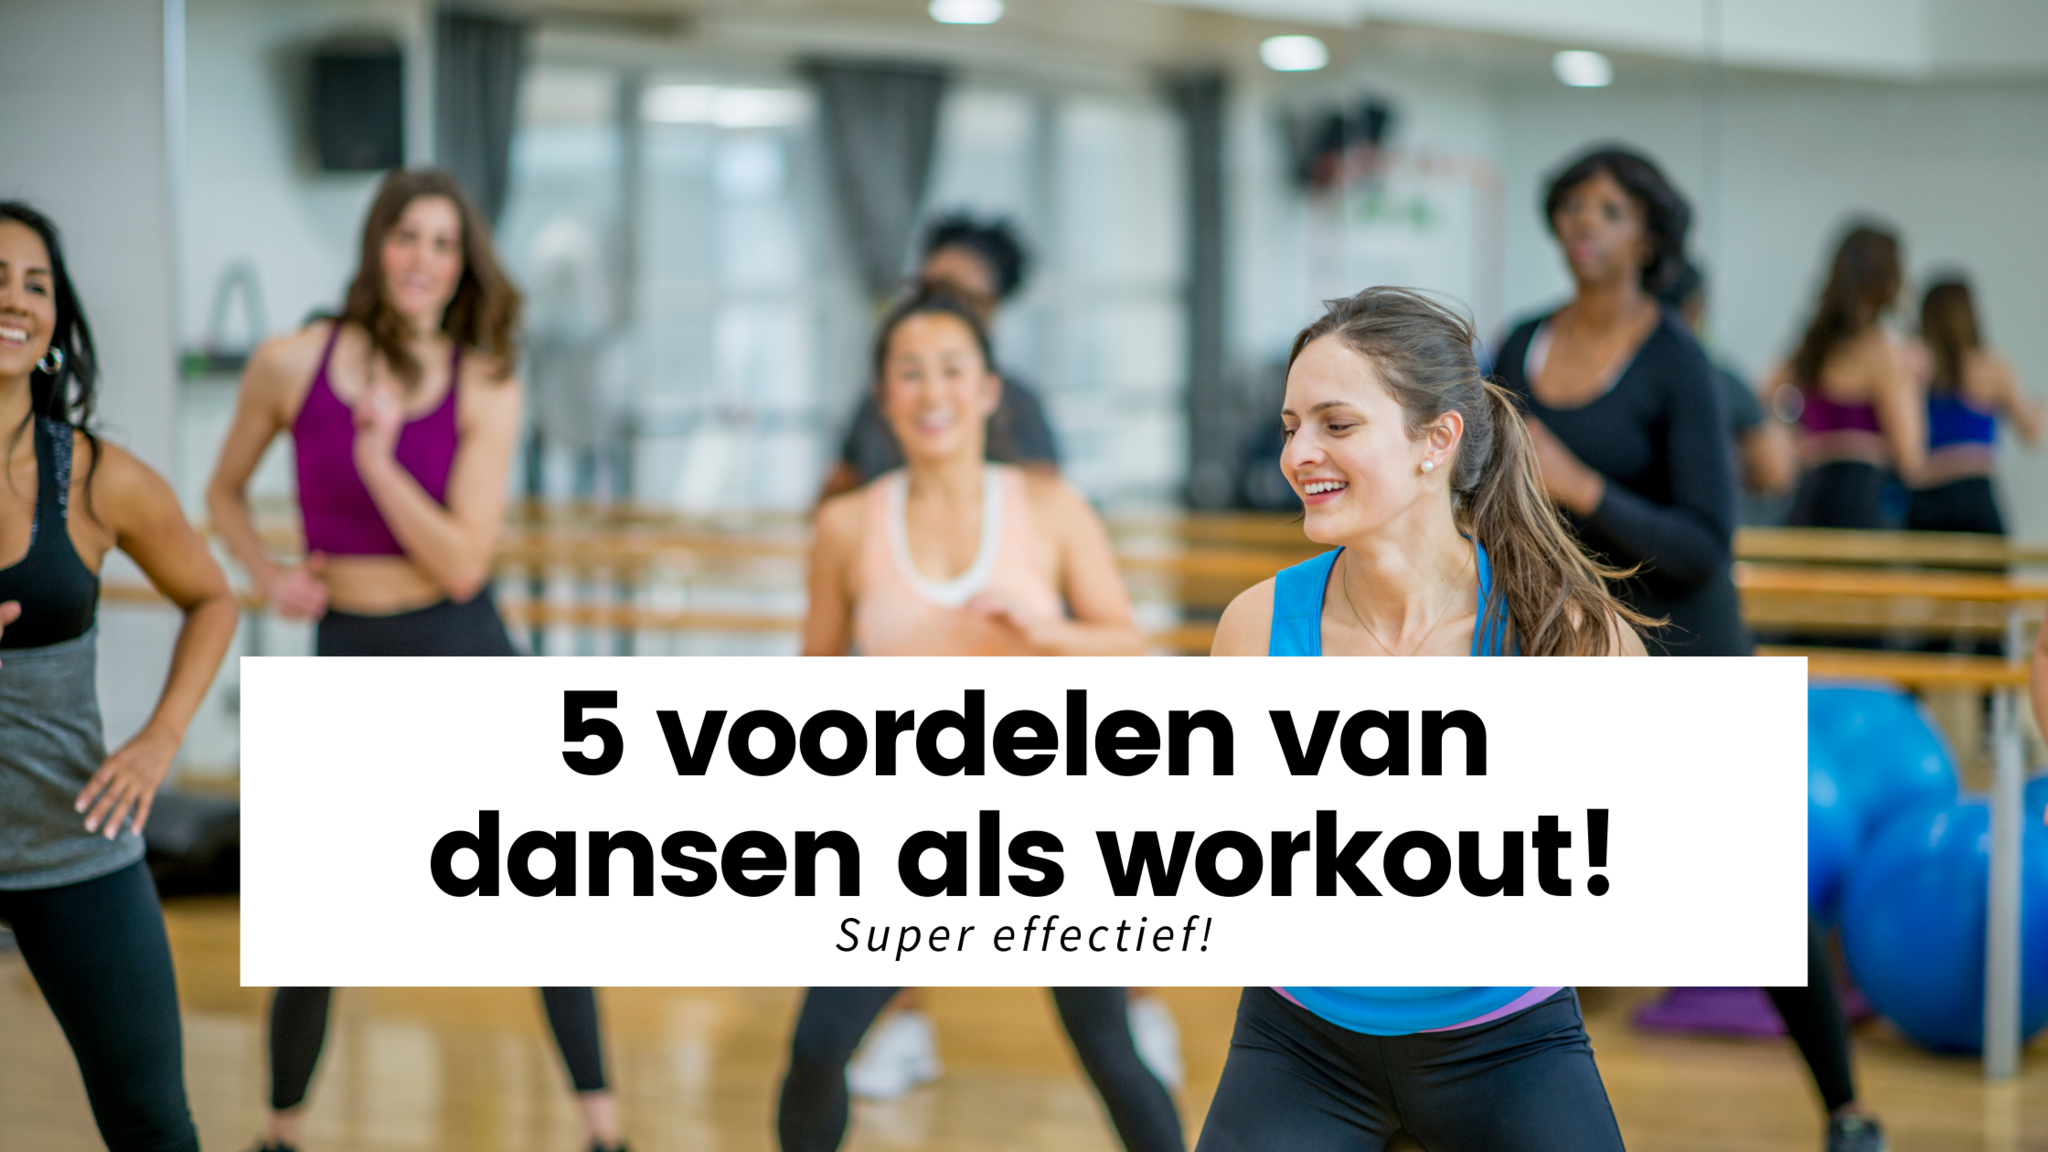 De 5 voordelen van dansen als workout!